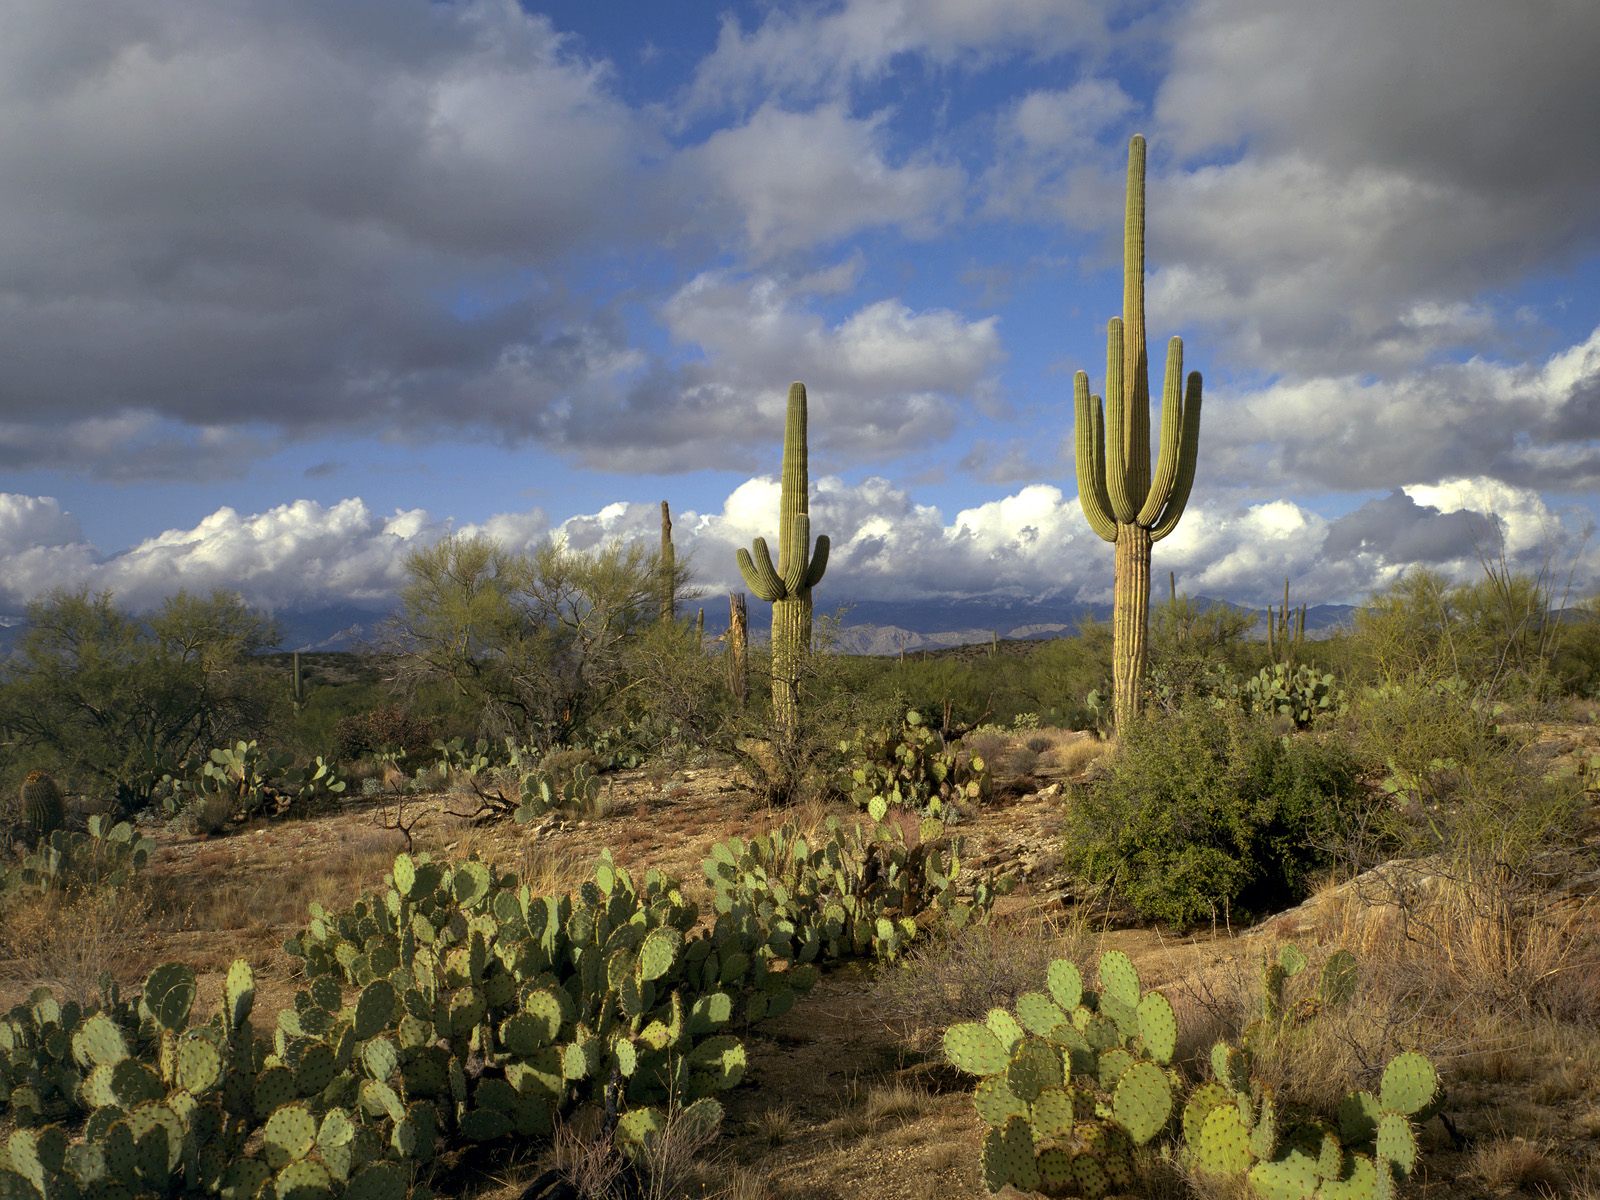  National Park Arizona 1   Arizona Photography Desktop Wallpapers